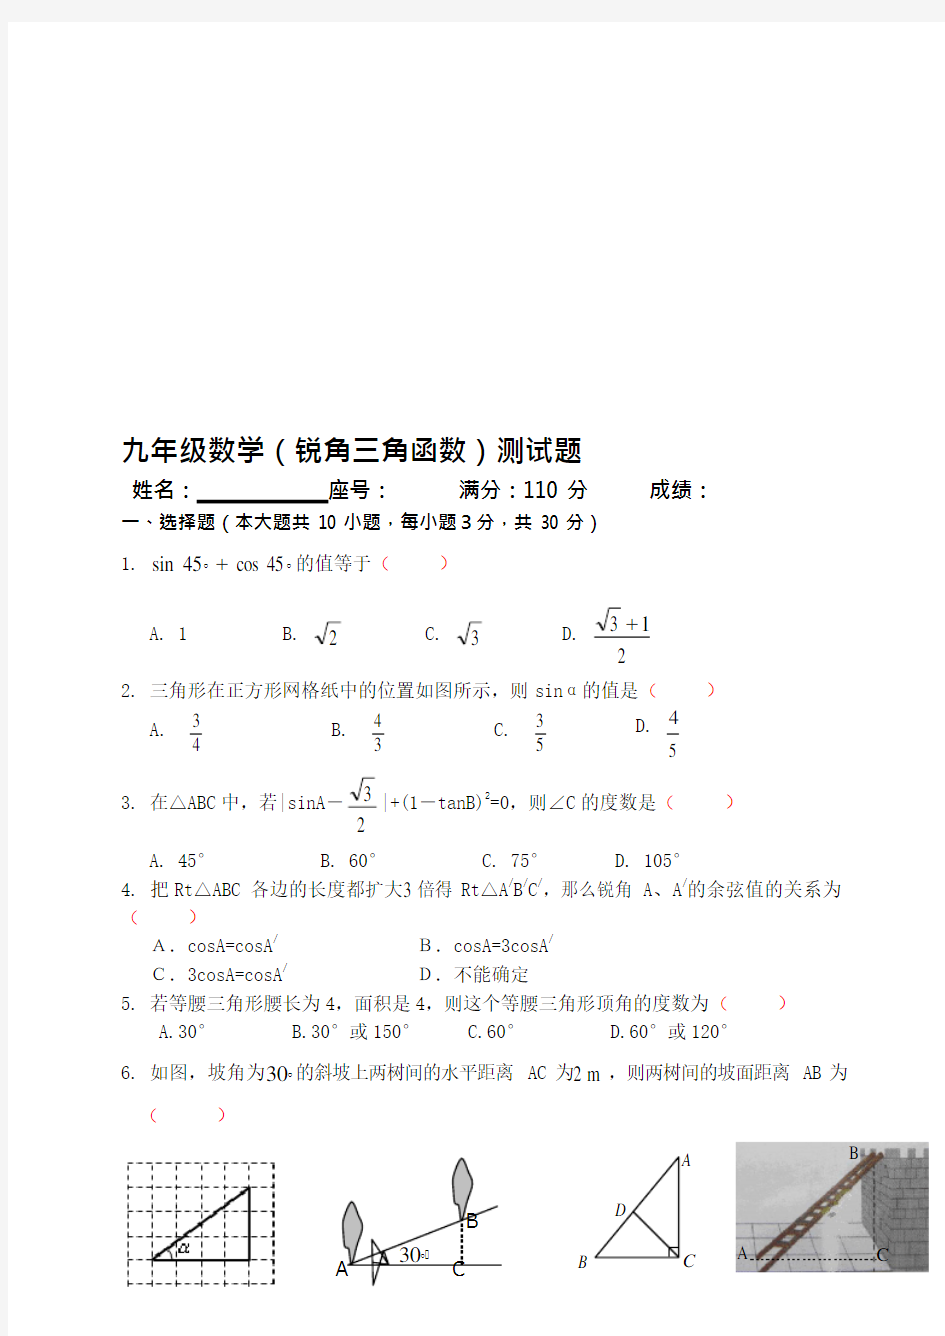 (完整版)九年级数学三角函数习题(可编辑修改word版)